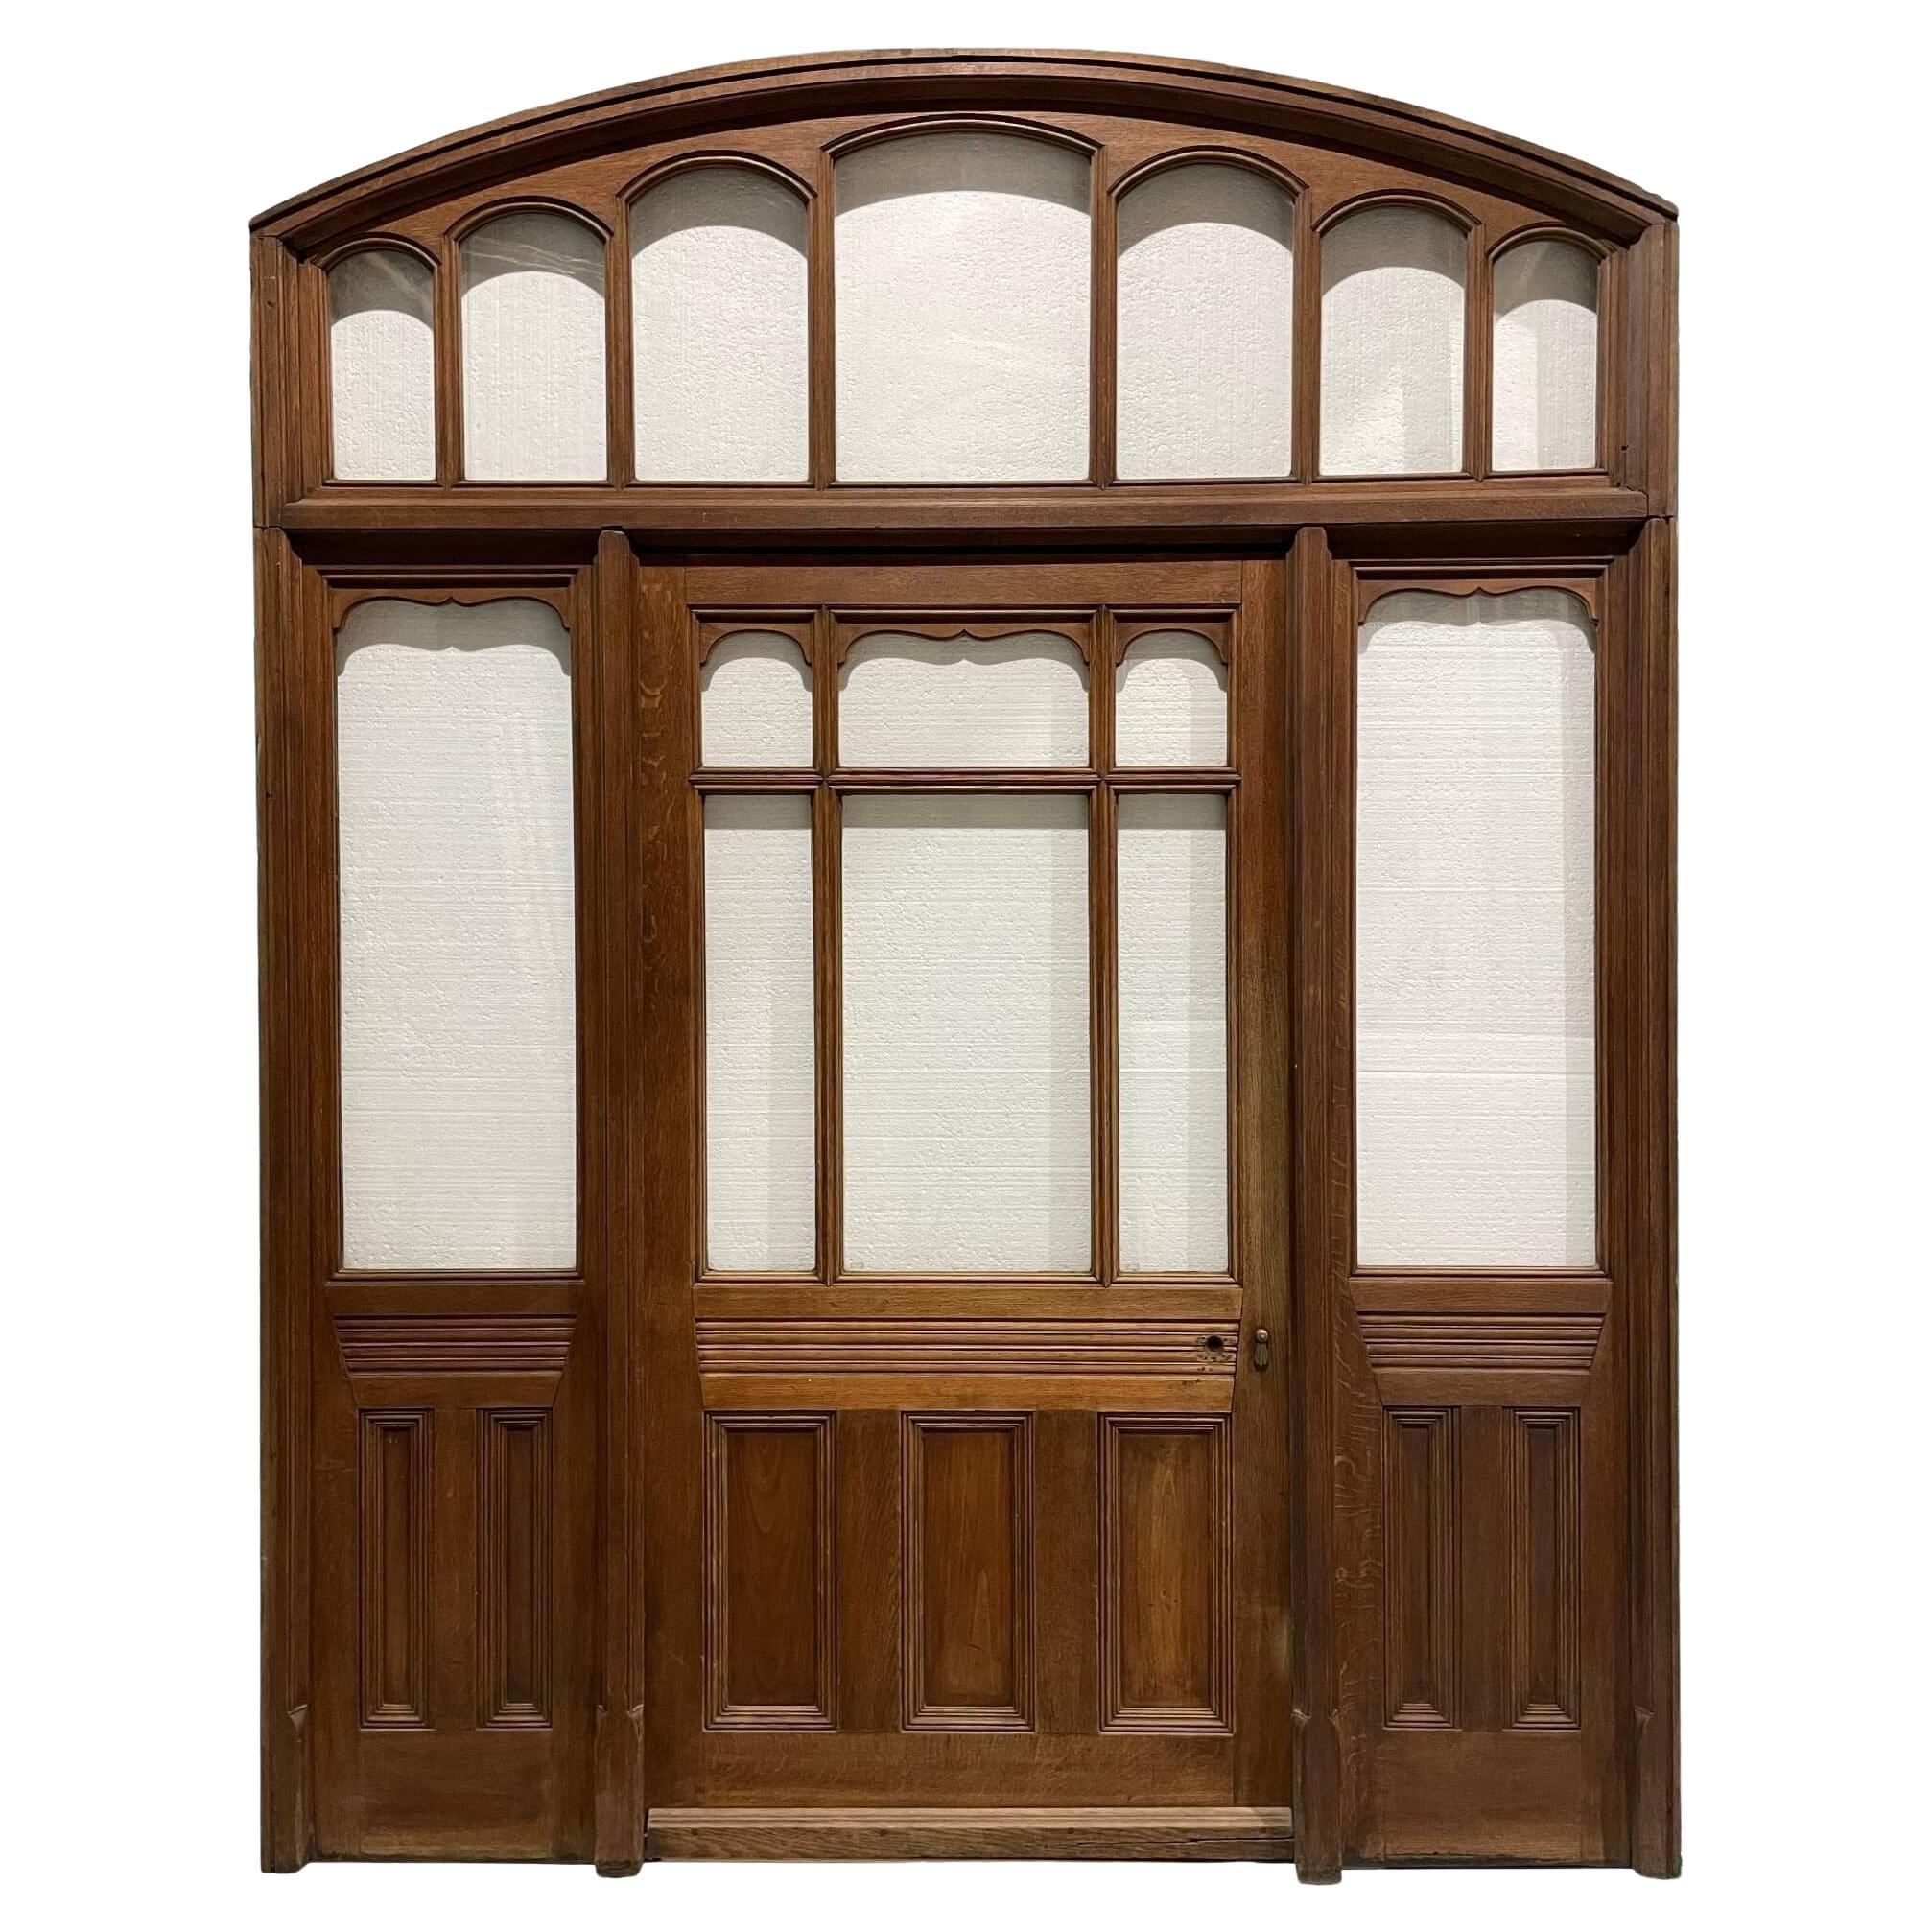 Victorian Glazed Oak Entranceway or Porch Door